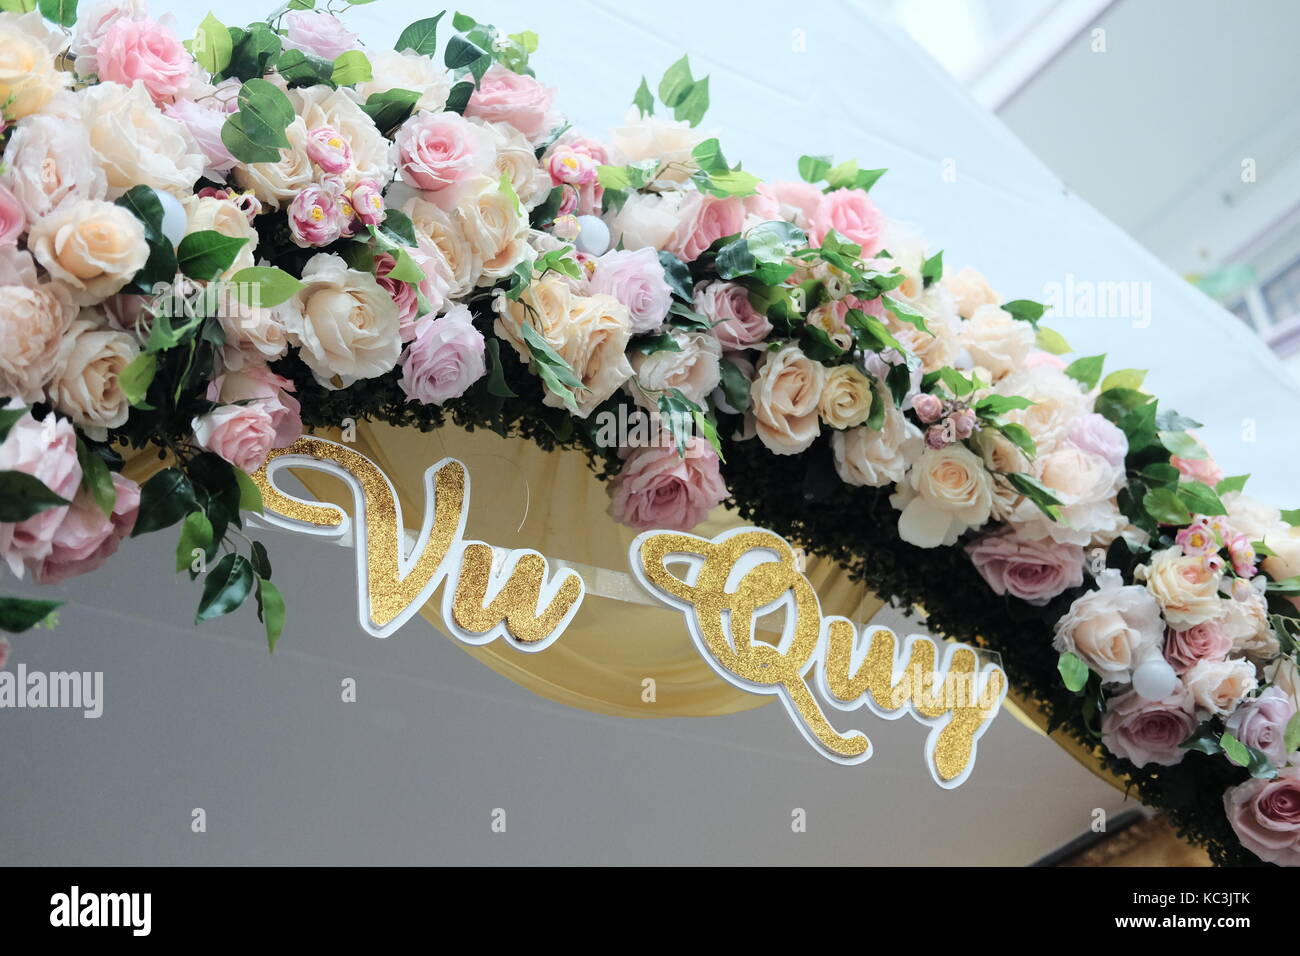 Tor von Blumen hinter der Braut Familie gemacht. text-vu Quy. Stockfoto